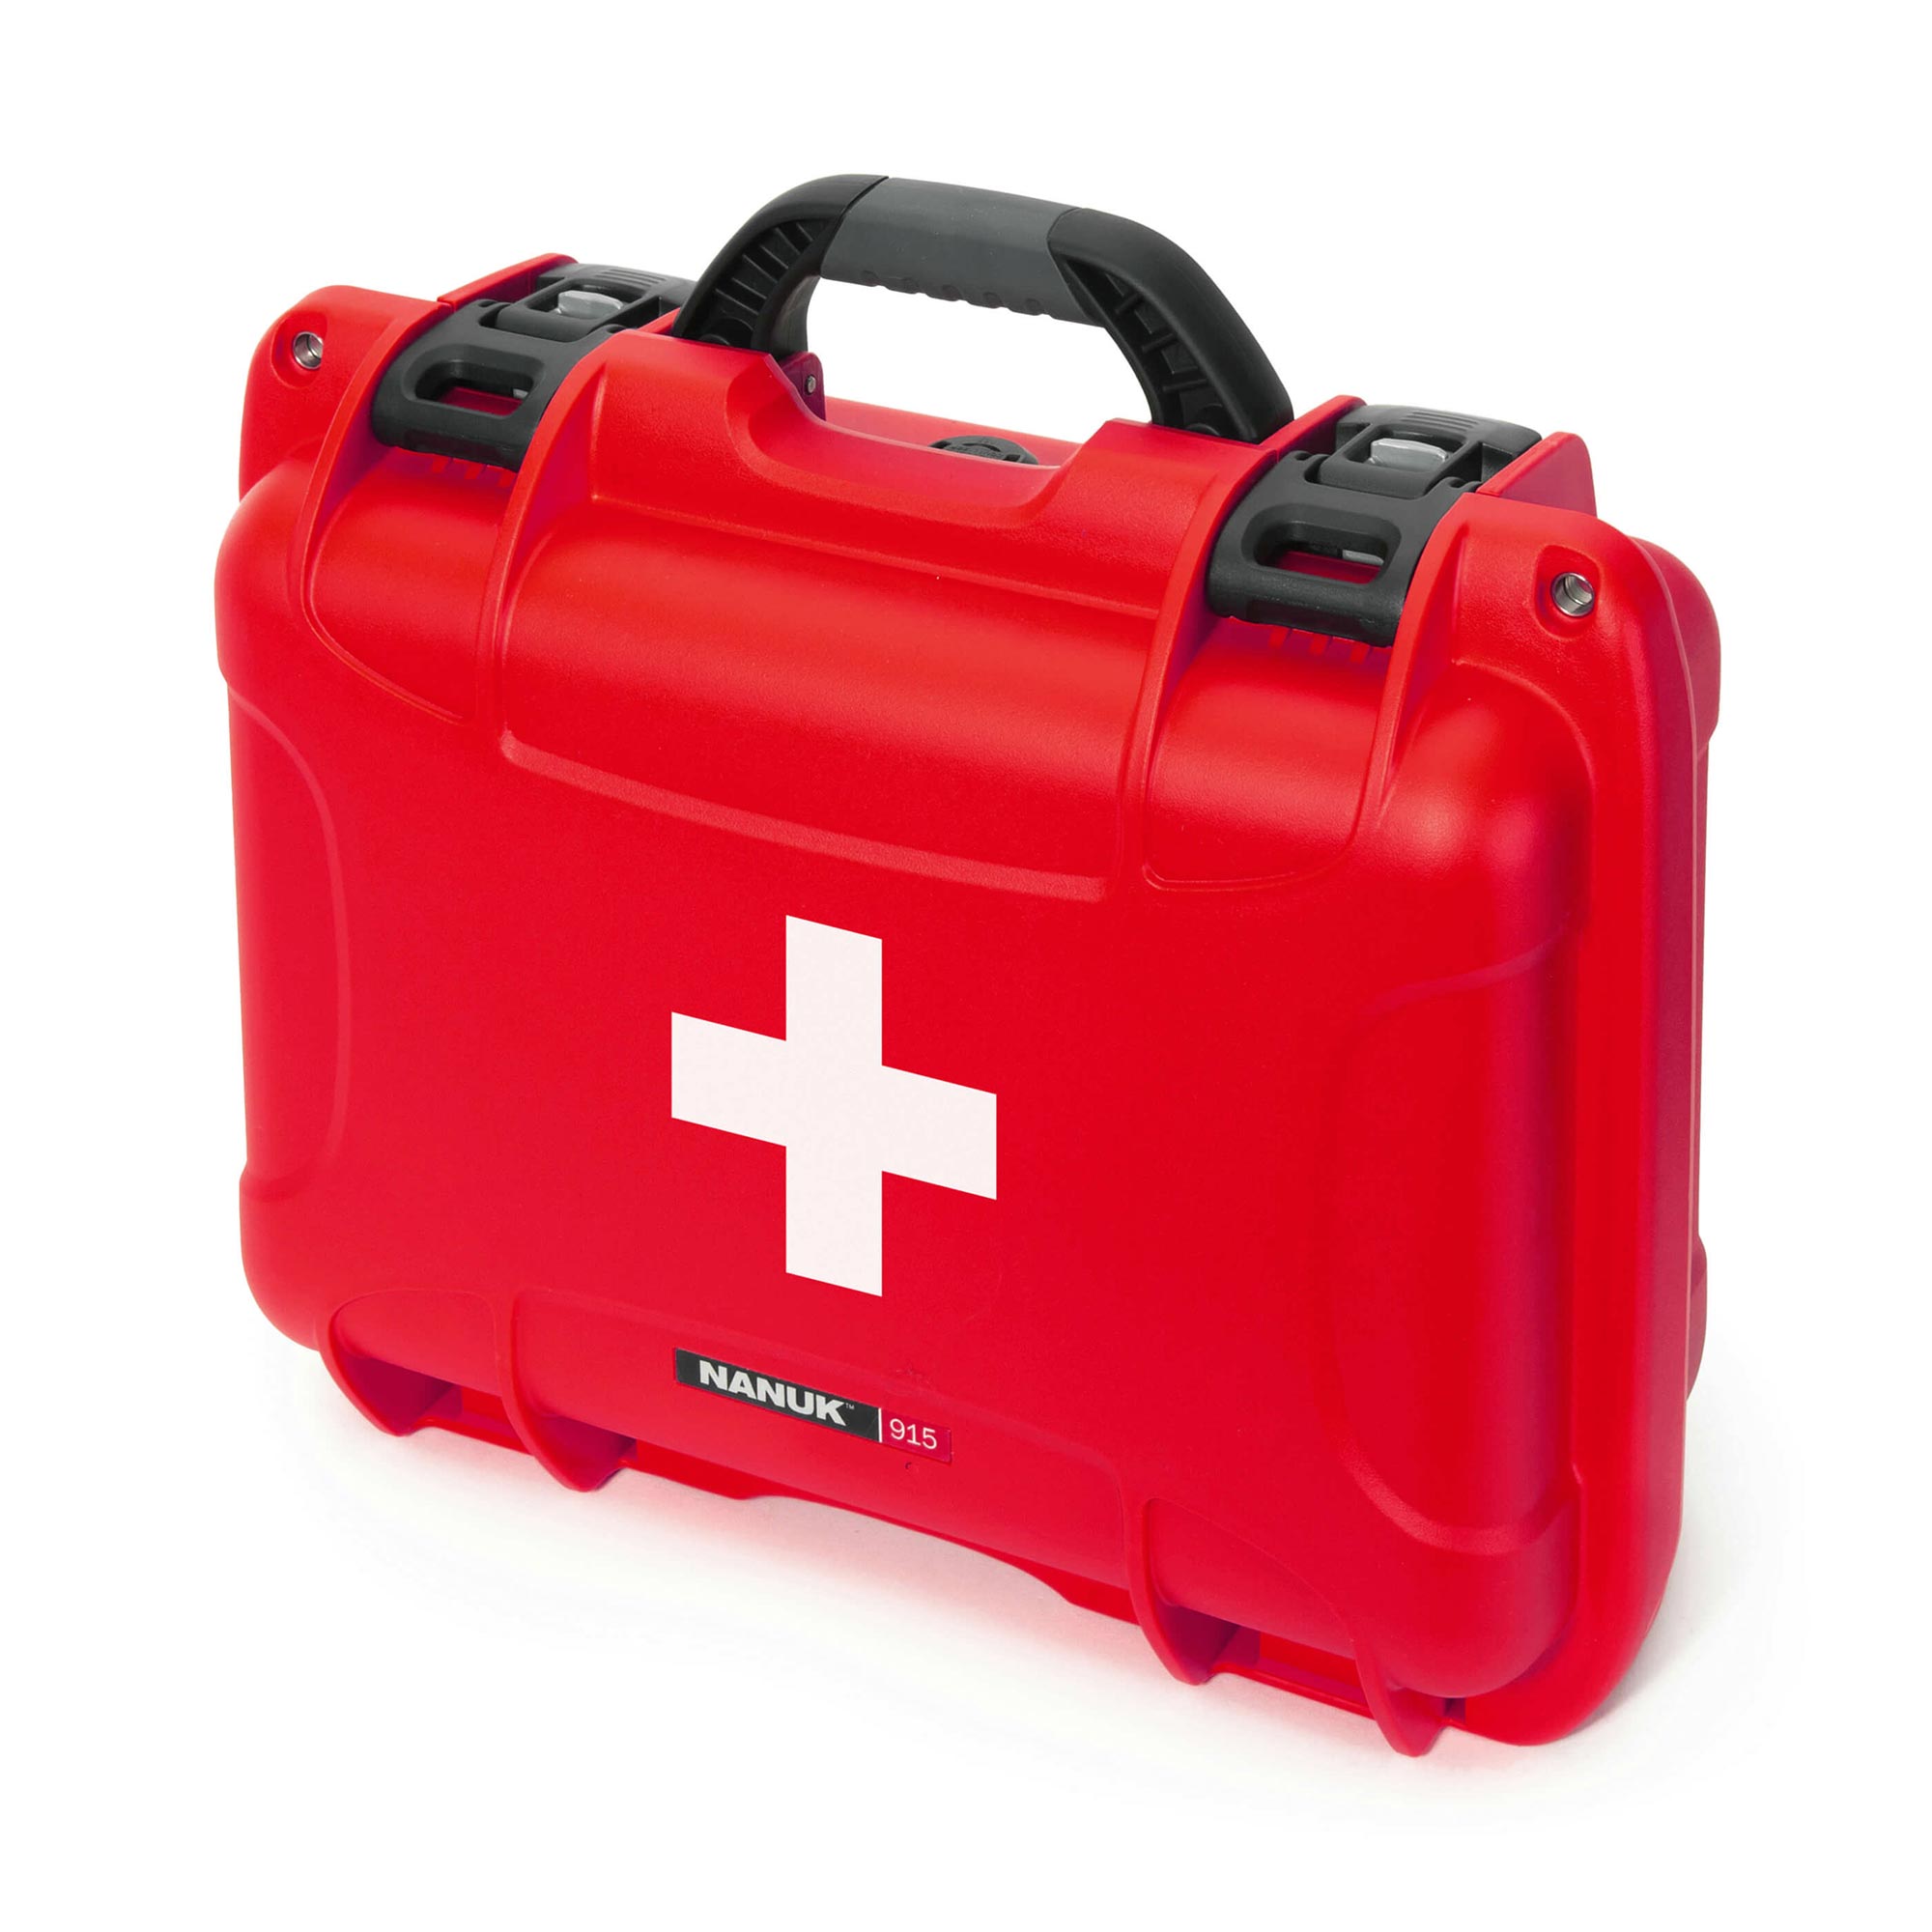 NANUK 915 valise de premiers secours - valise extérieur - Rouge - NANUK